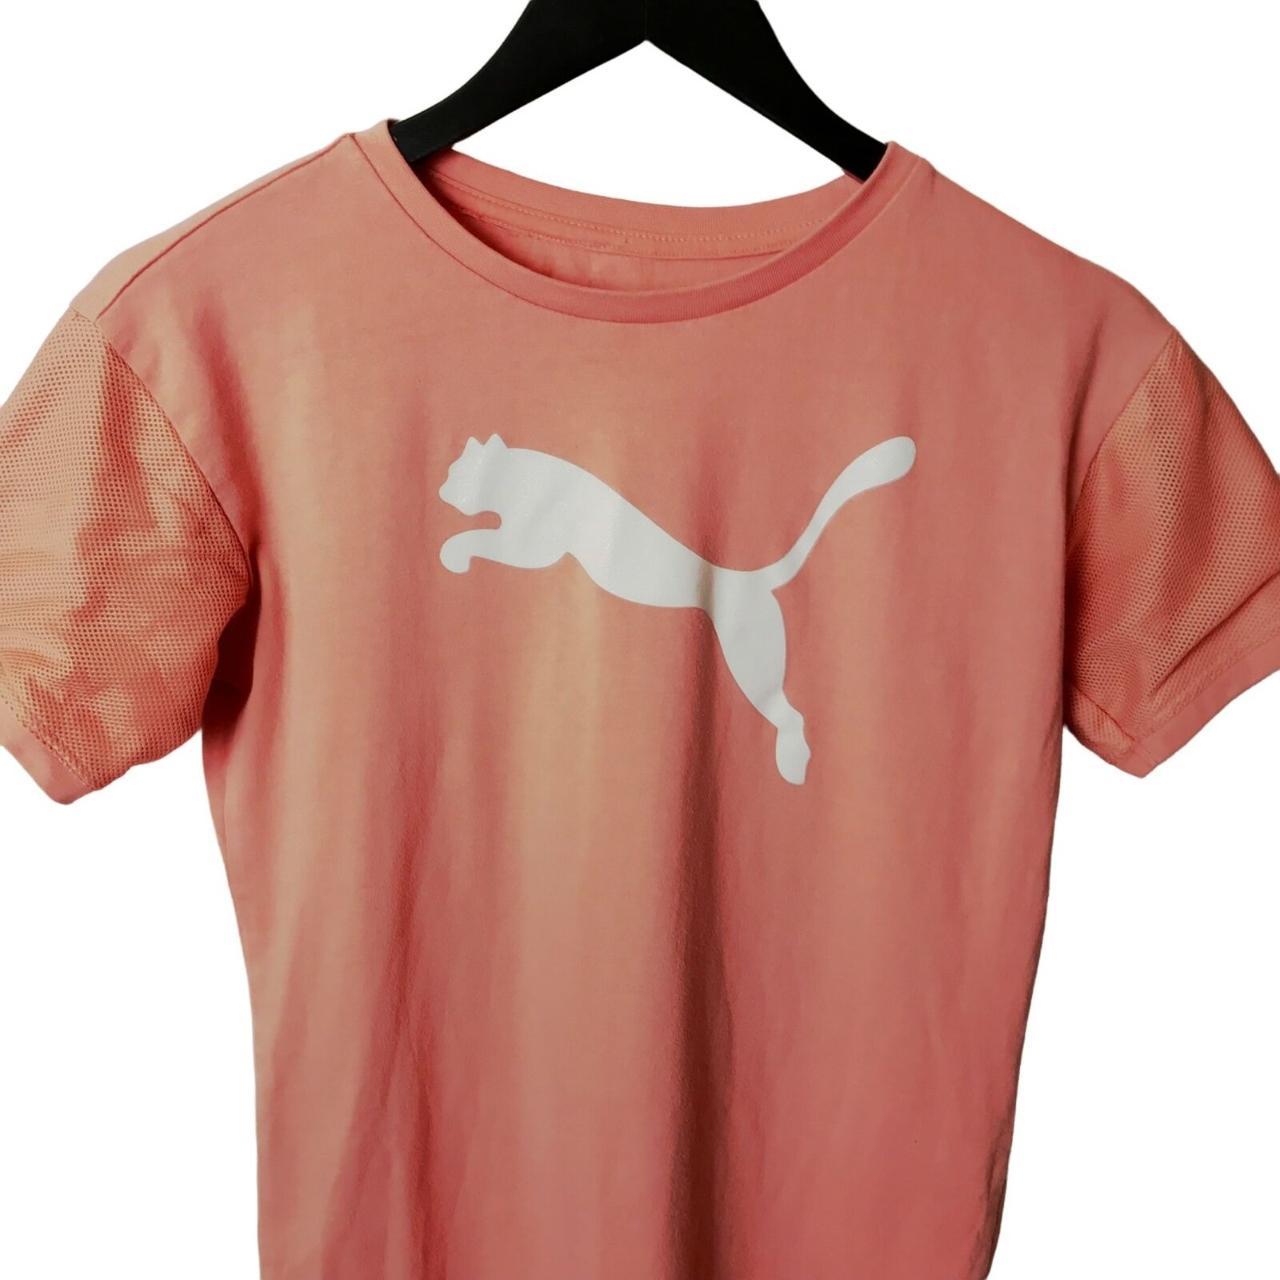 PacSun Men's Pink T-shirt (2)